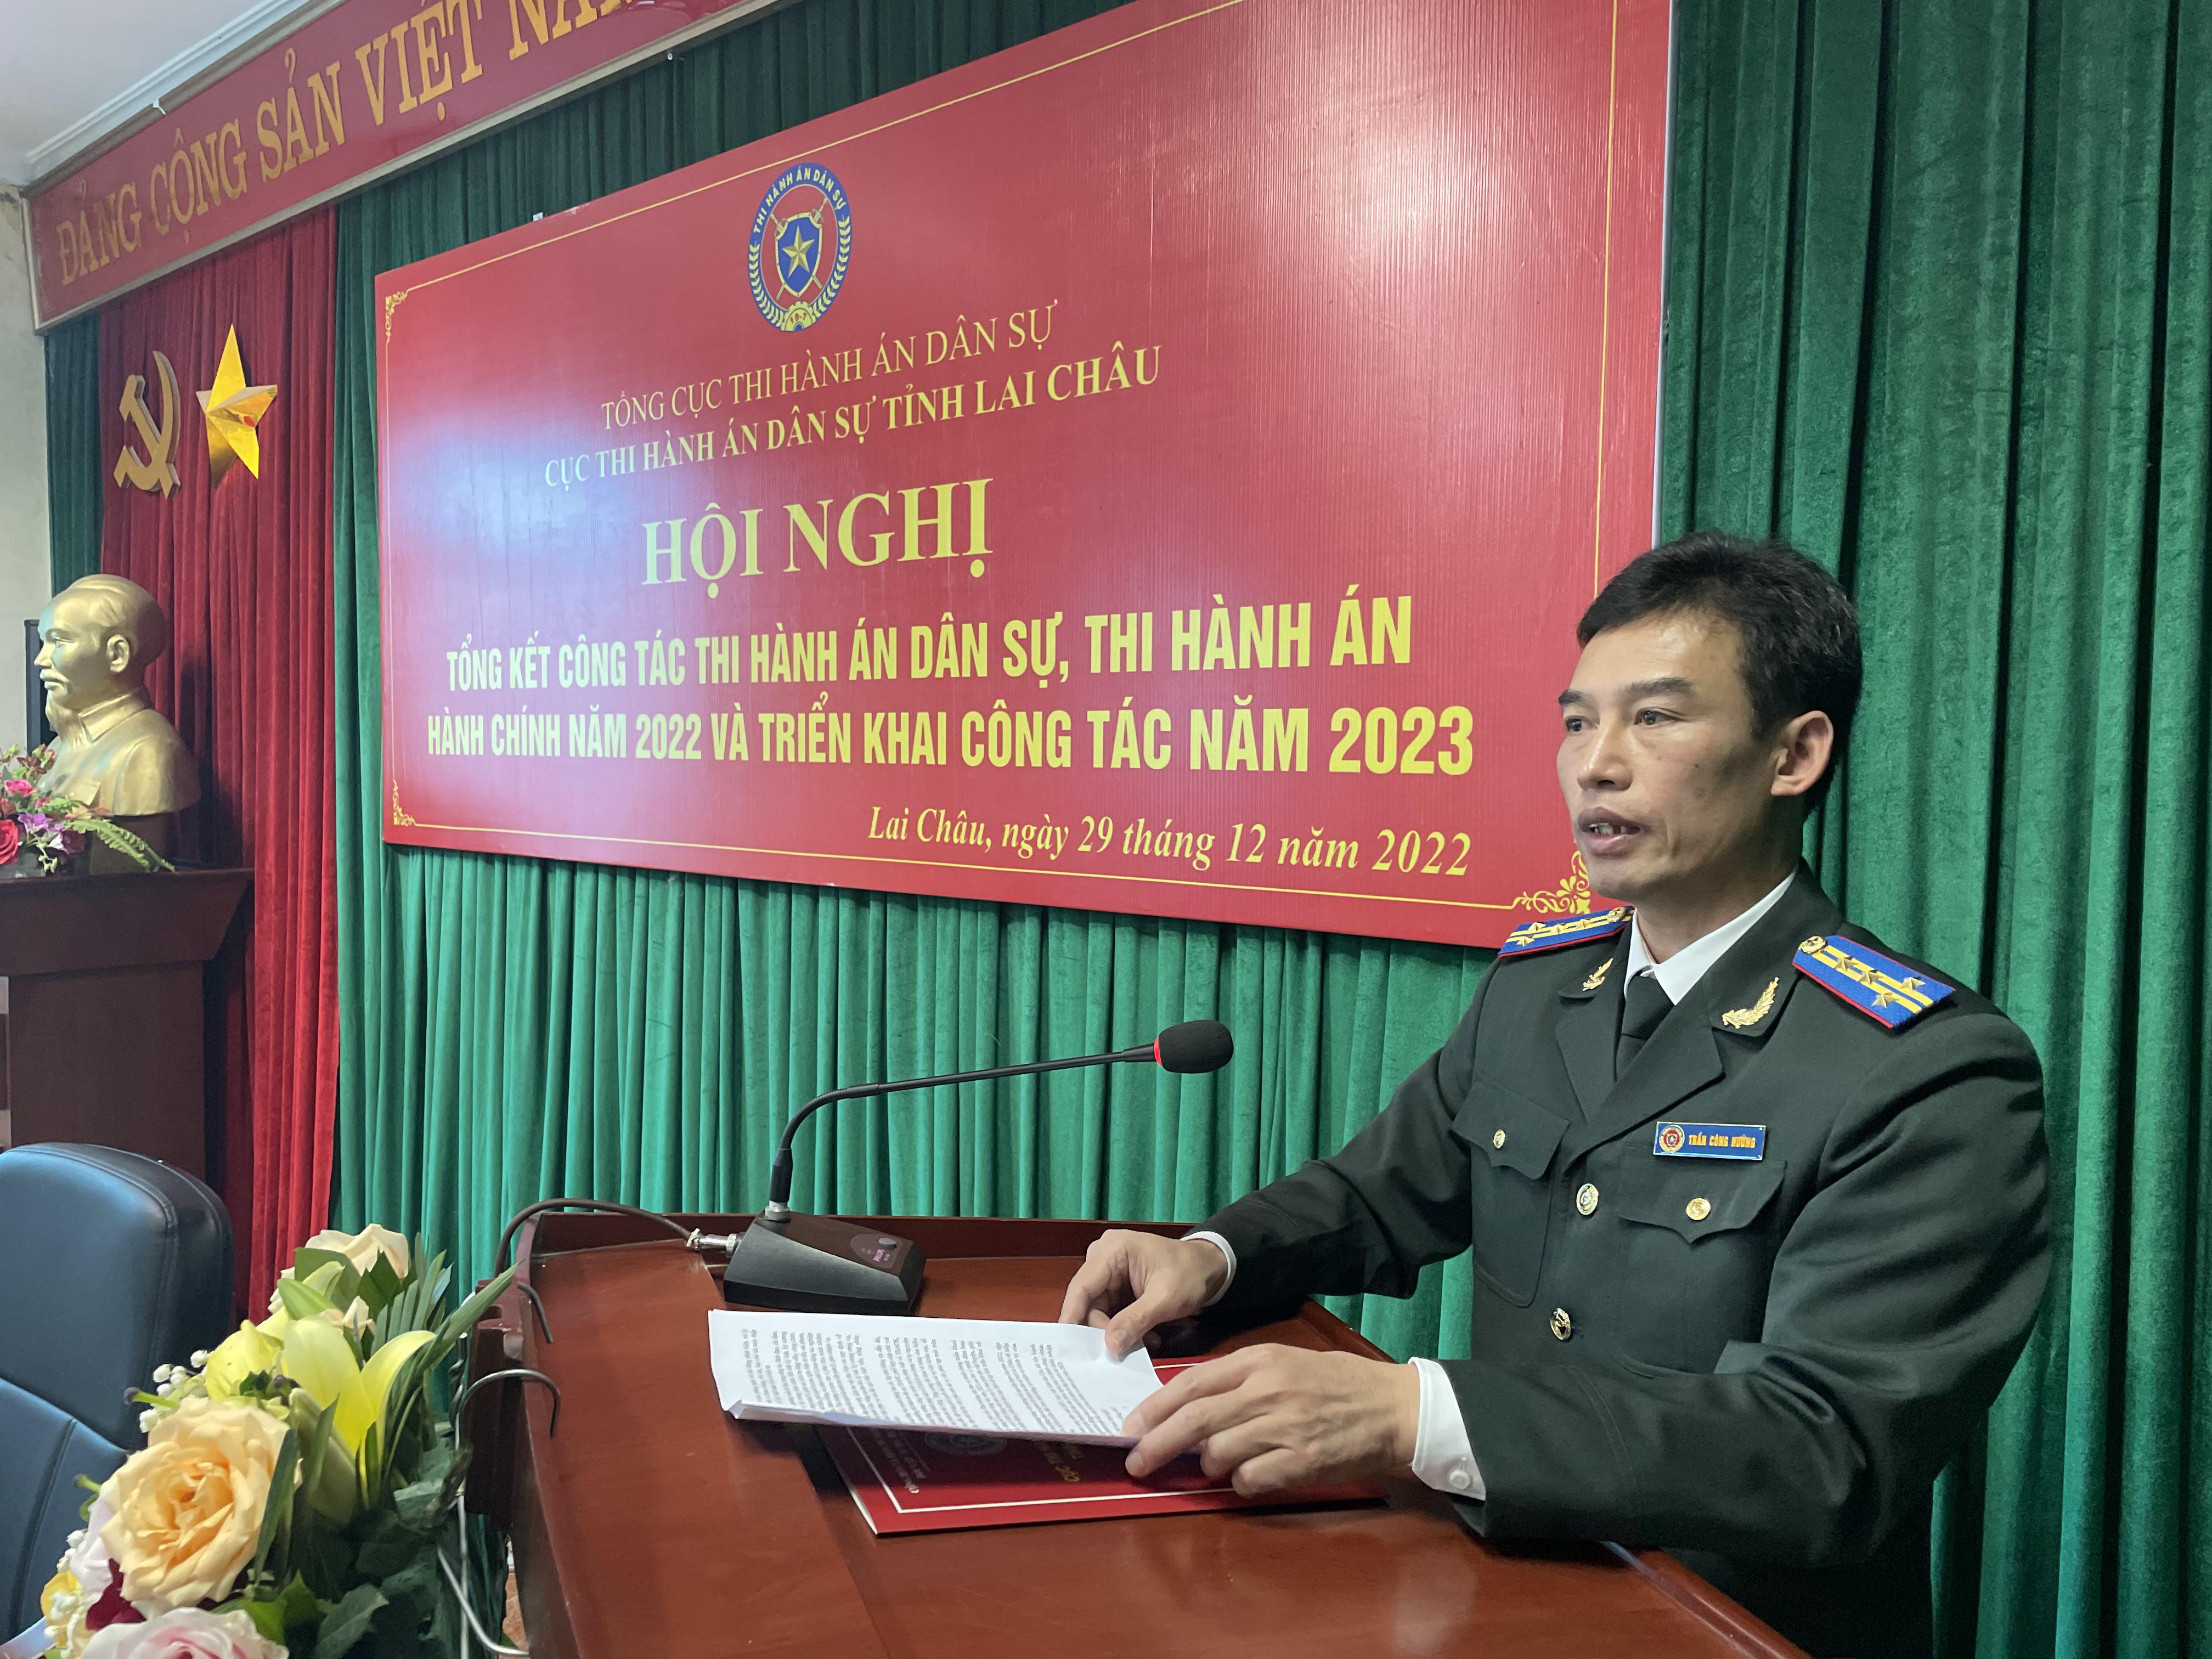 Cục THADS tỉnh Lai Châu tổ chức Hội nghị tổng kết công tác THADS, THAHC năm 2022 và triển khai công tác năm 2023